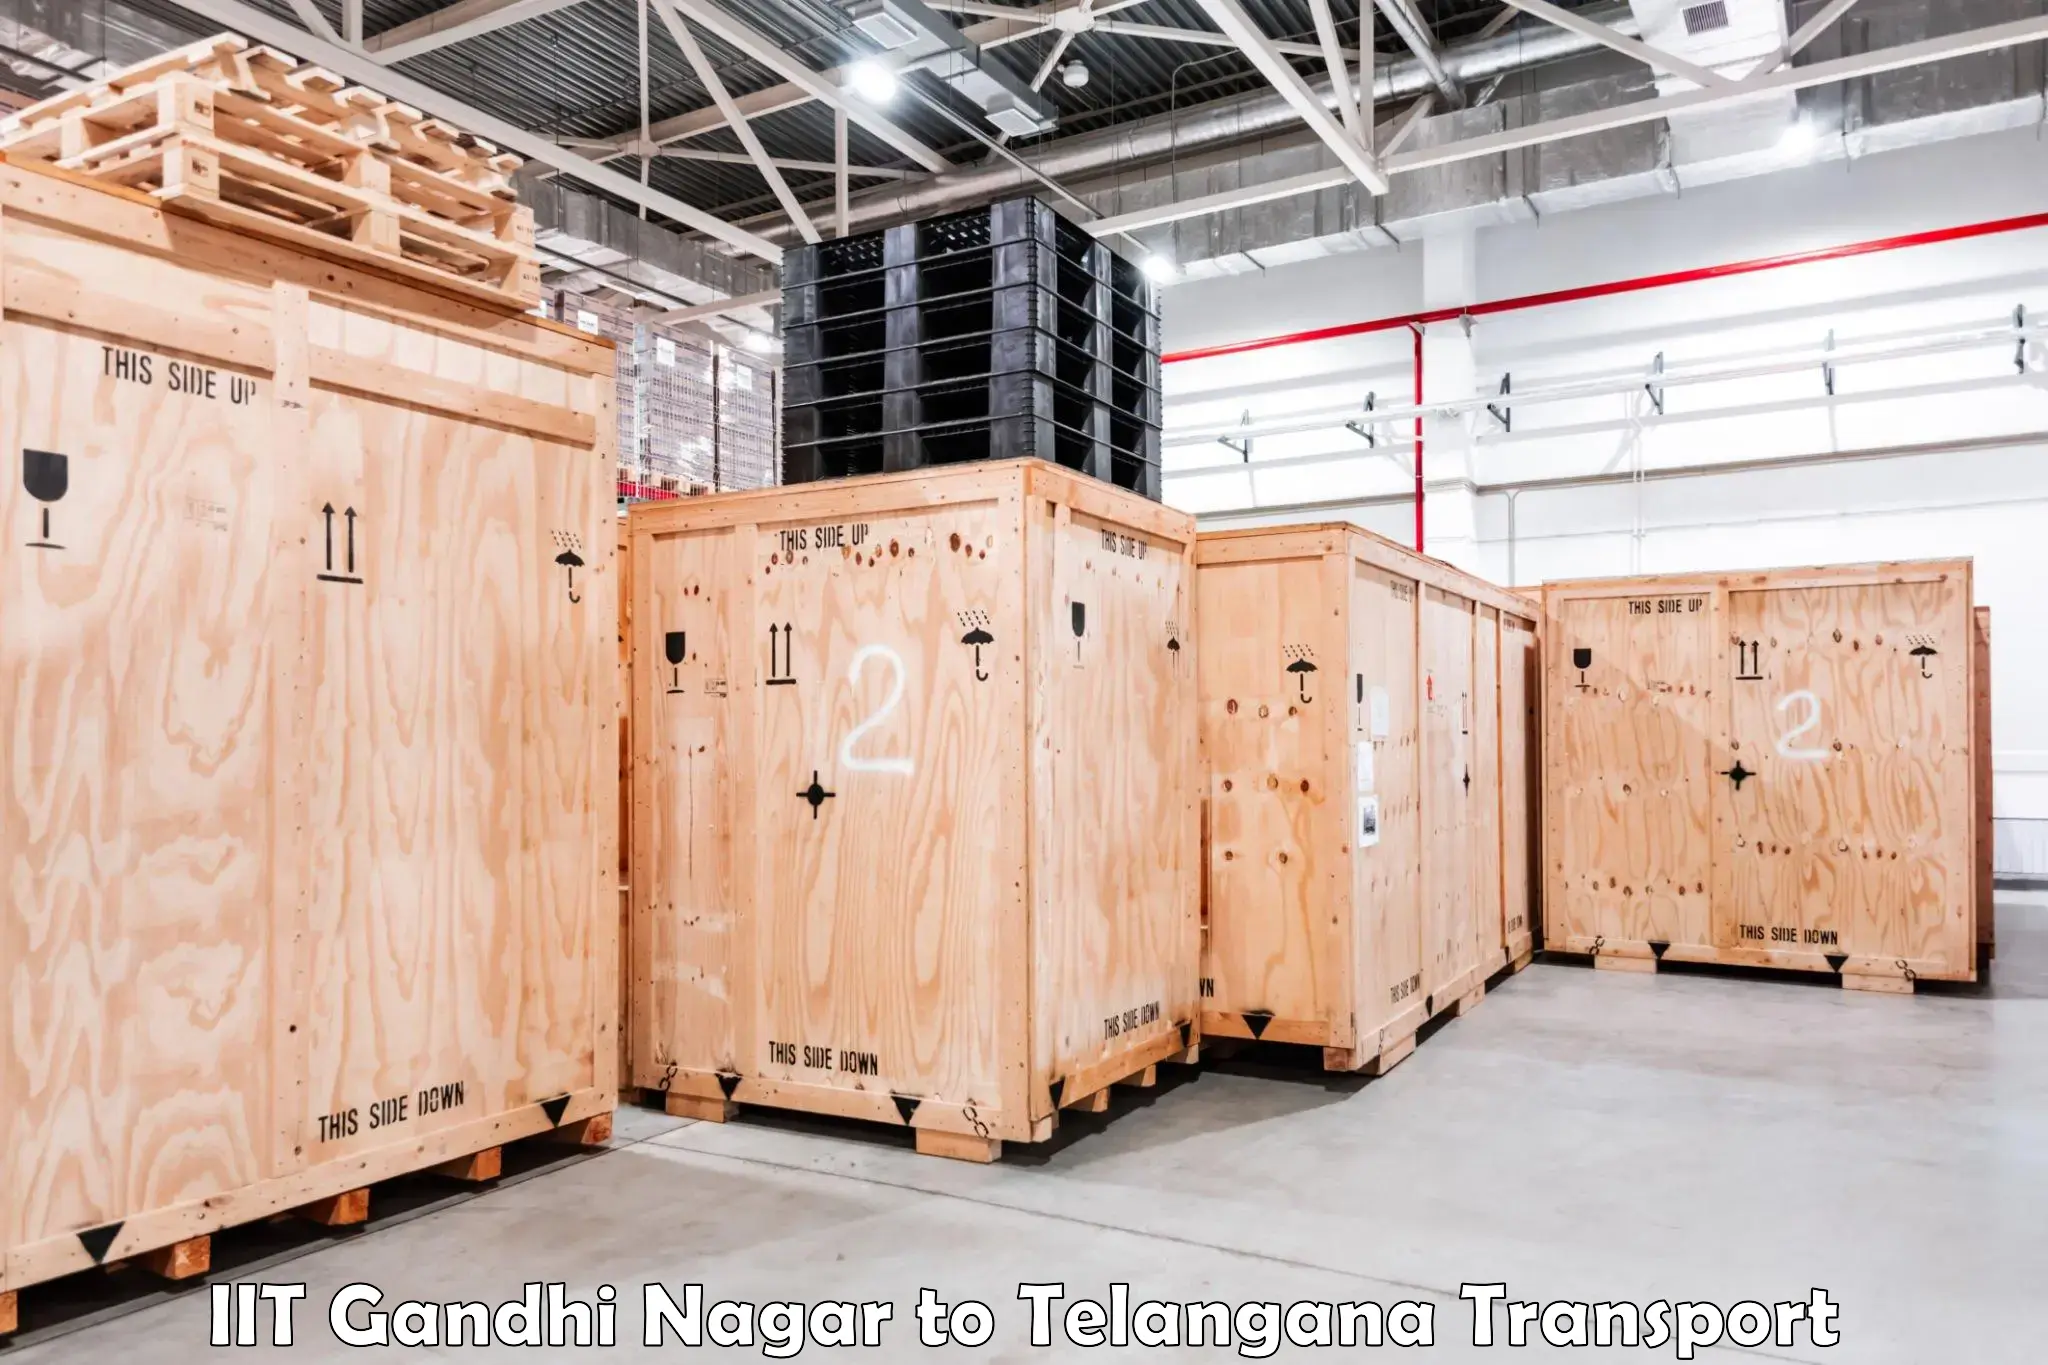 Container transportation services IIT Gandhi Nagar to Bijinapalle